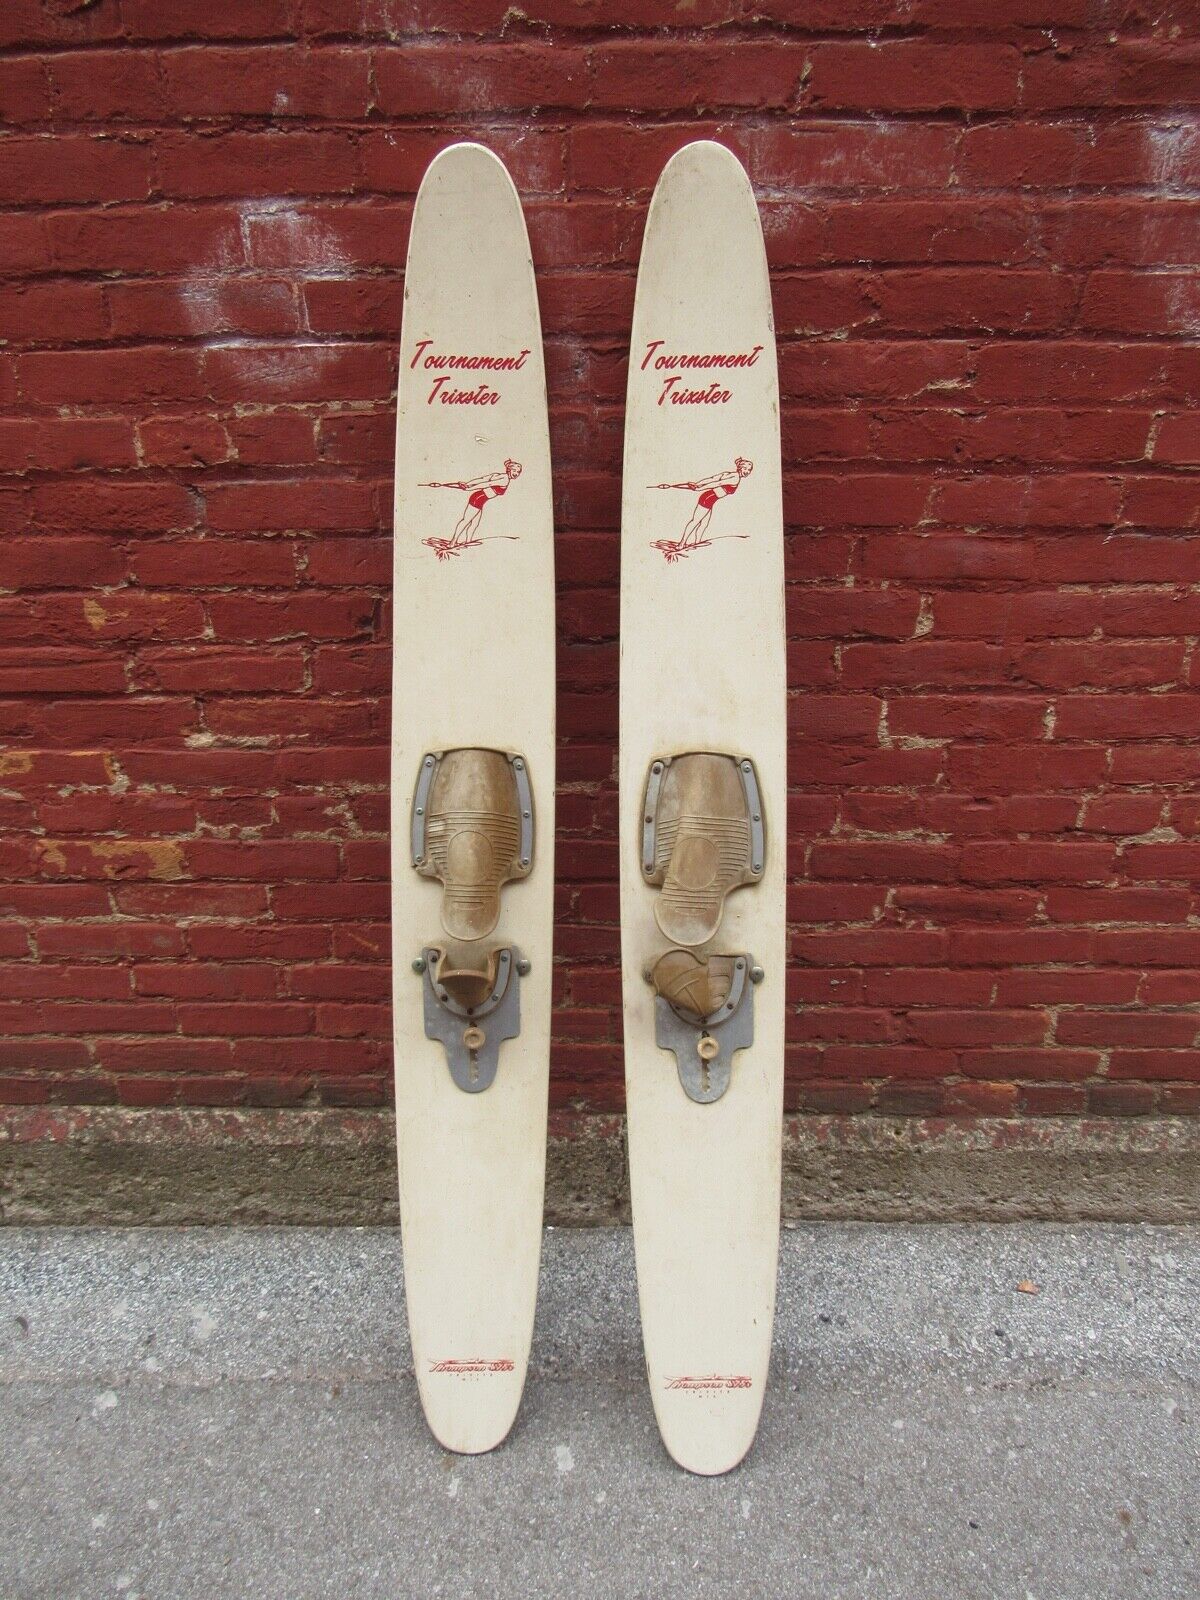 Vintage RARE TOURNAMENT TRIXSTER Wooden Water Skis Thomson Skis Crivitz, Wis.